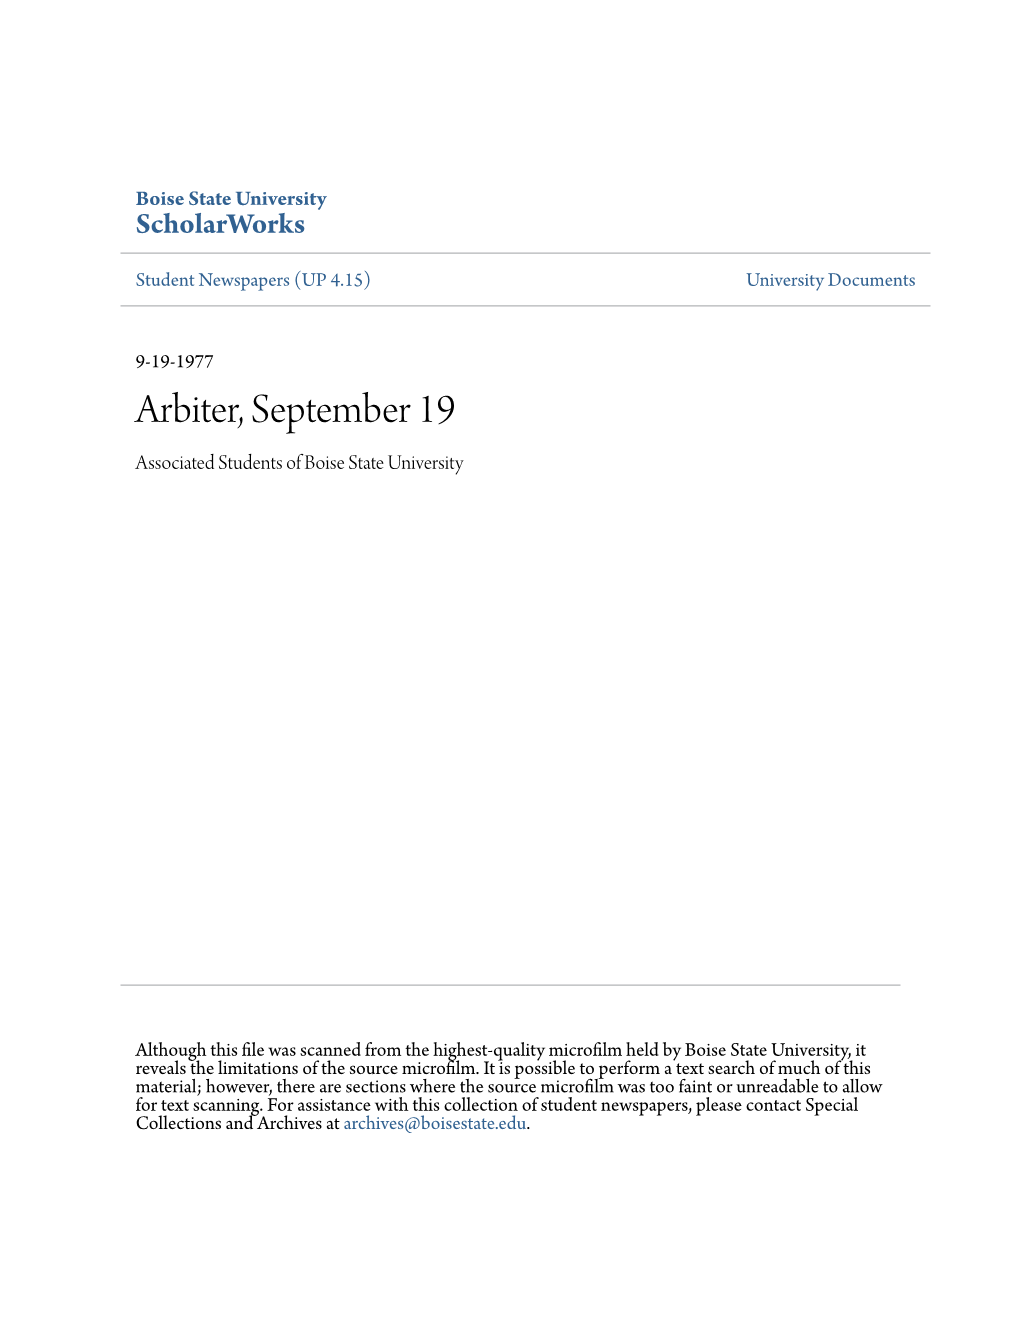 Arbiter, September 19 Associated Students of Boise State University